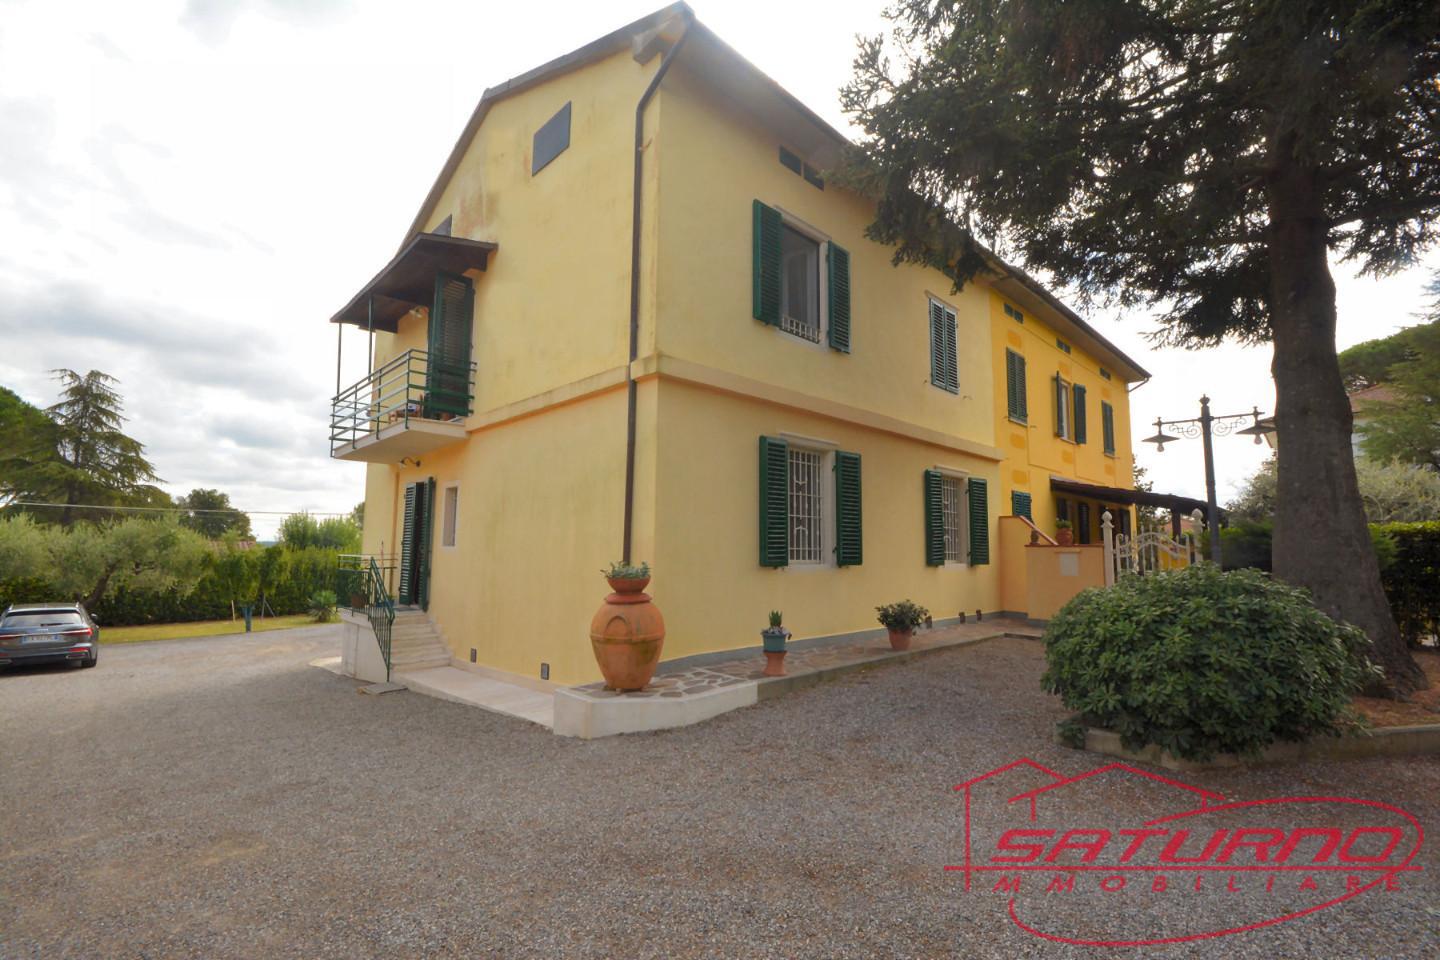 Villa Bifamiliare in vendita a Capannori, 6 locali, prezzo € 290.000 | PortaleAgenzieImmobiliari.it